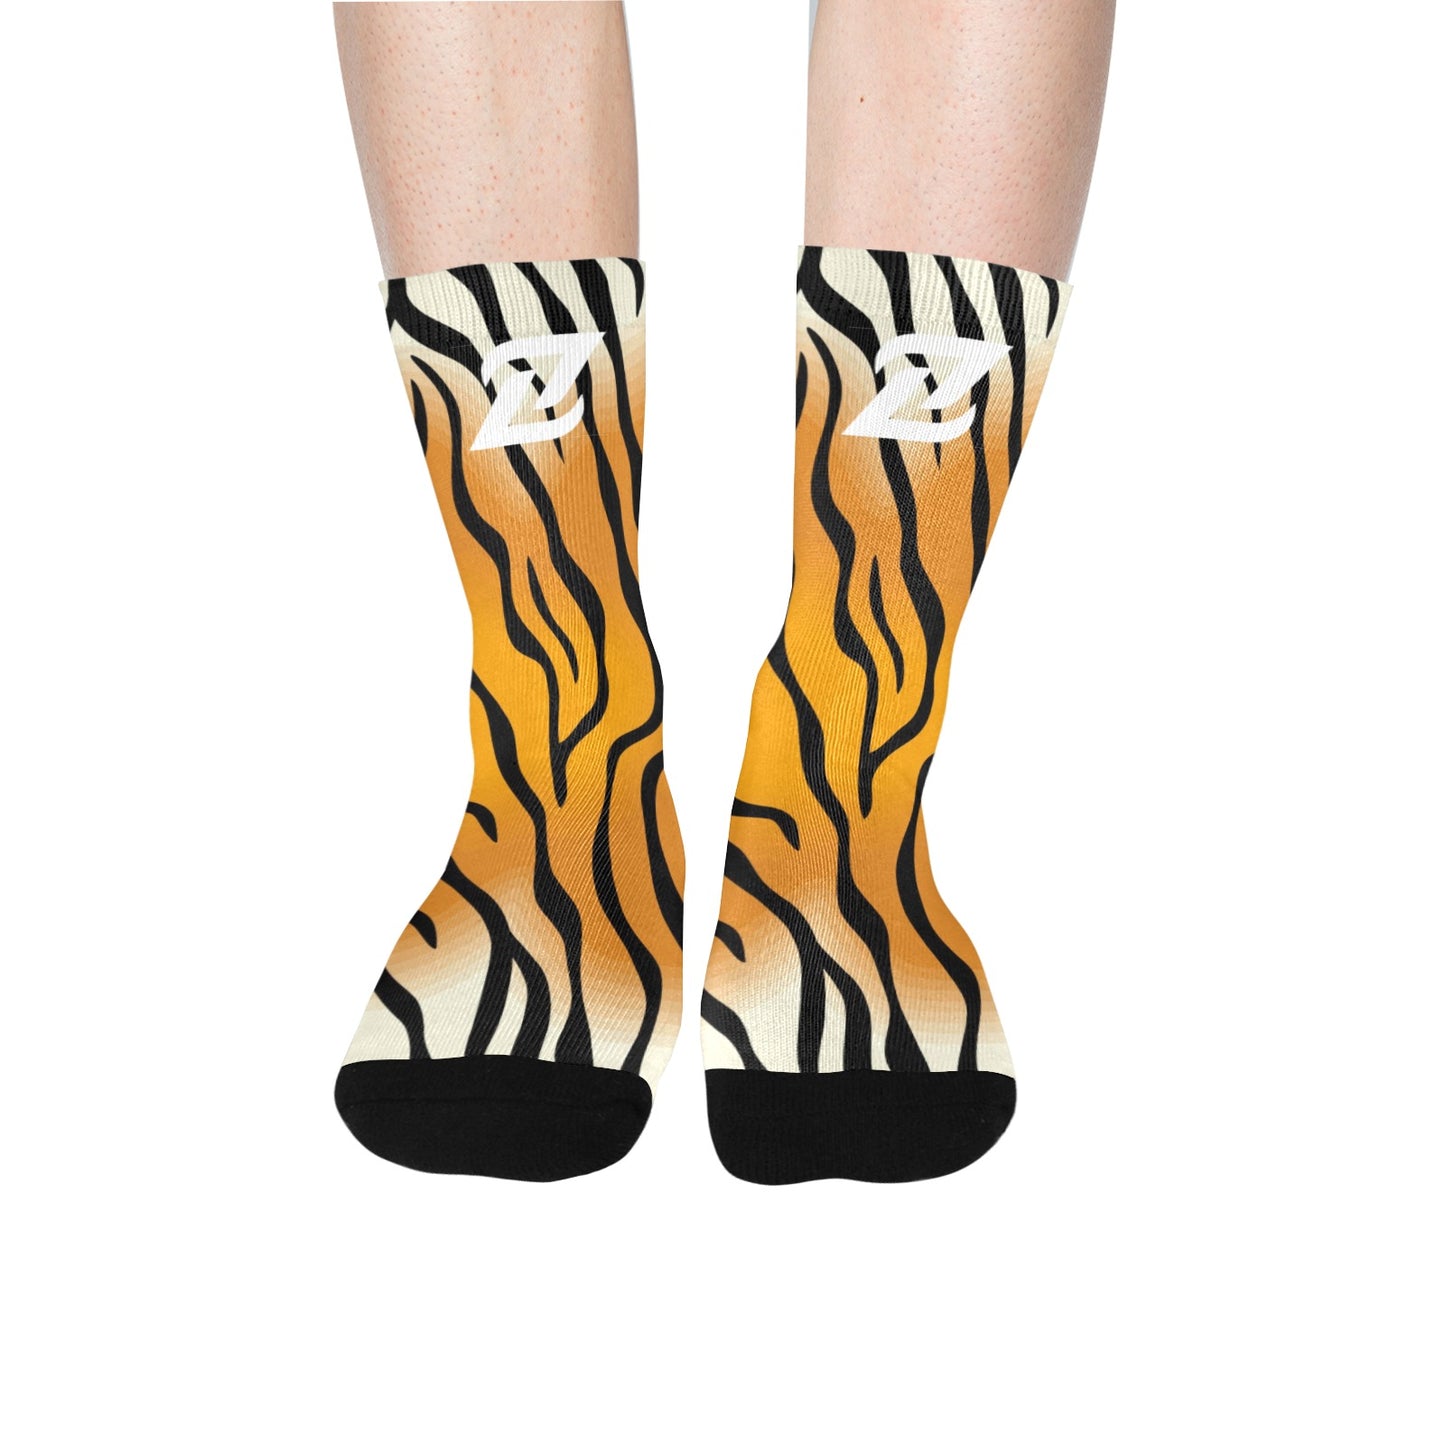 Zen Socks - Tiger Stripes